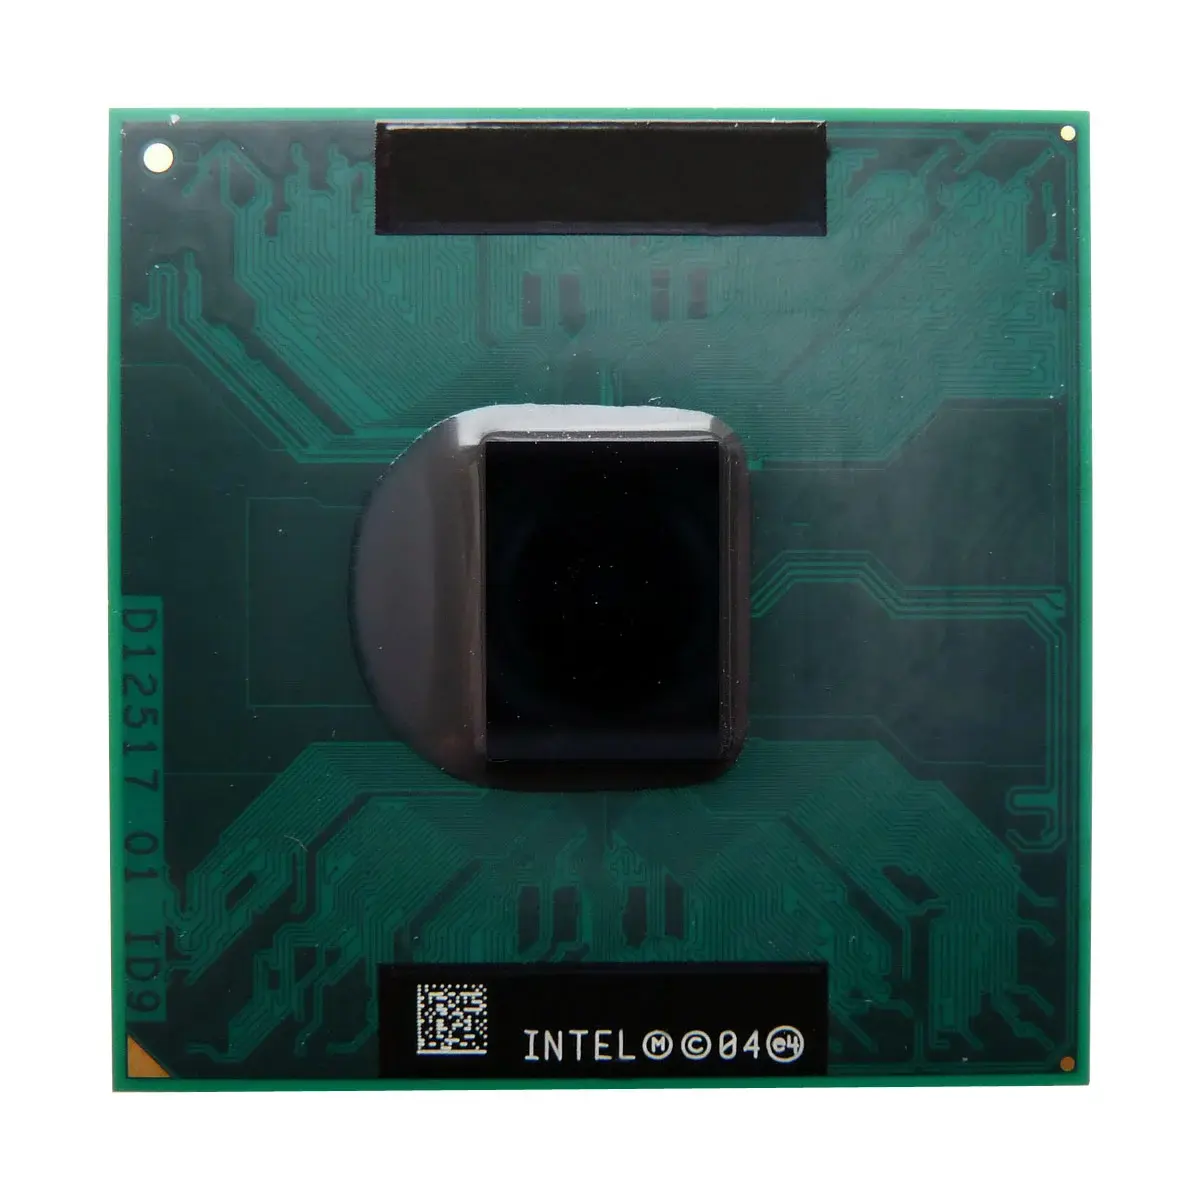 RJ80530LY800512 Intel Pentium III 800MHz 100MHz FSB 512KB L2 Cache Socket 479 Mobile Processor